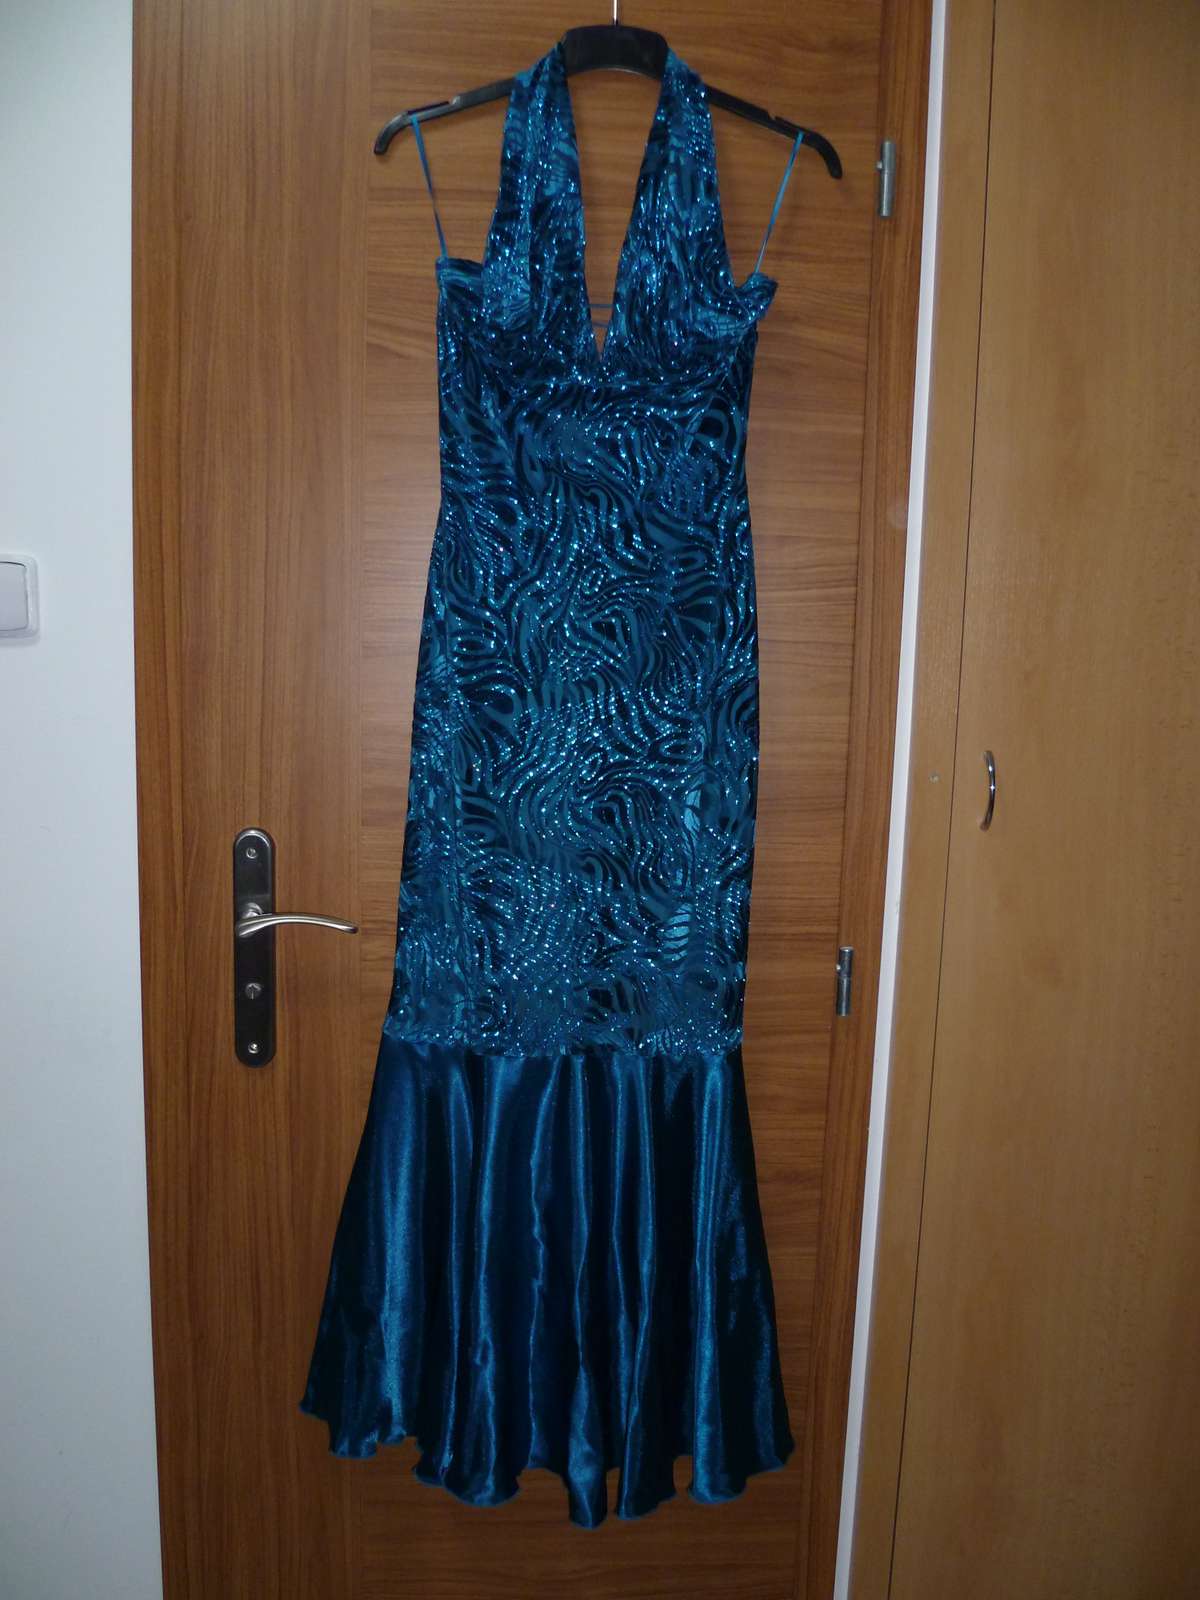 Dlouhé plisované společenské šaty, tyrkys s flitry - Obrázek č. 1